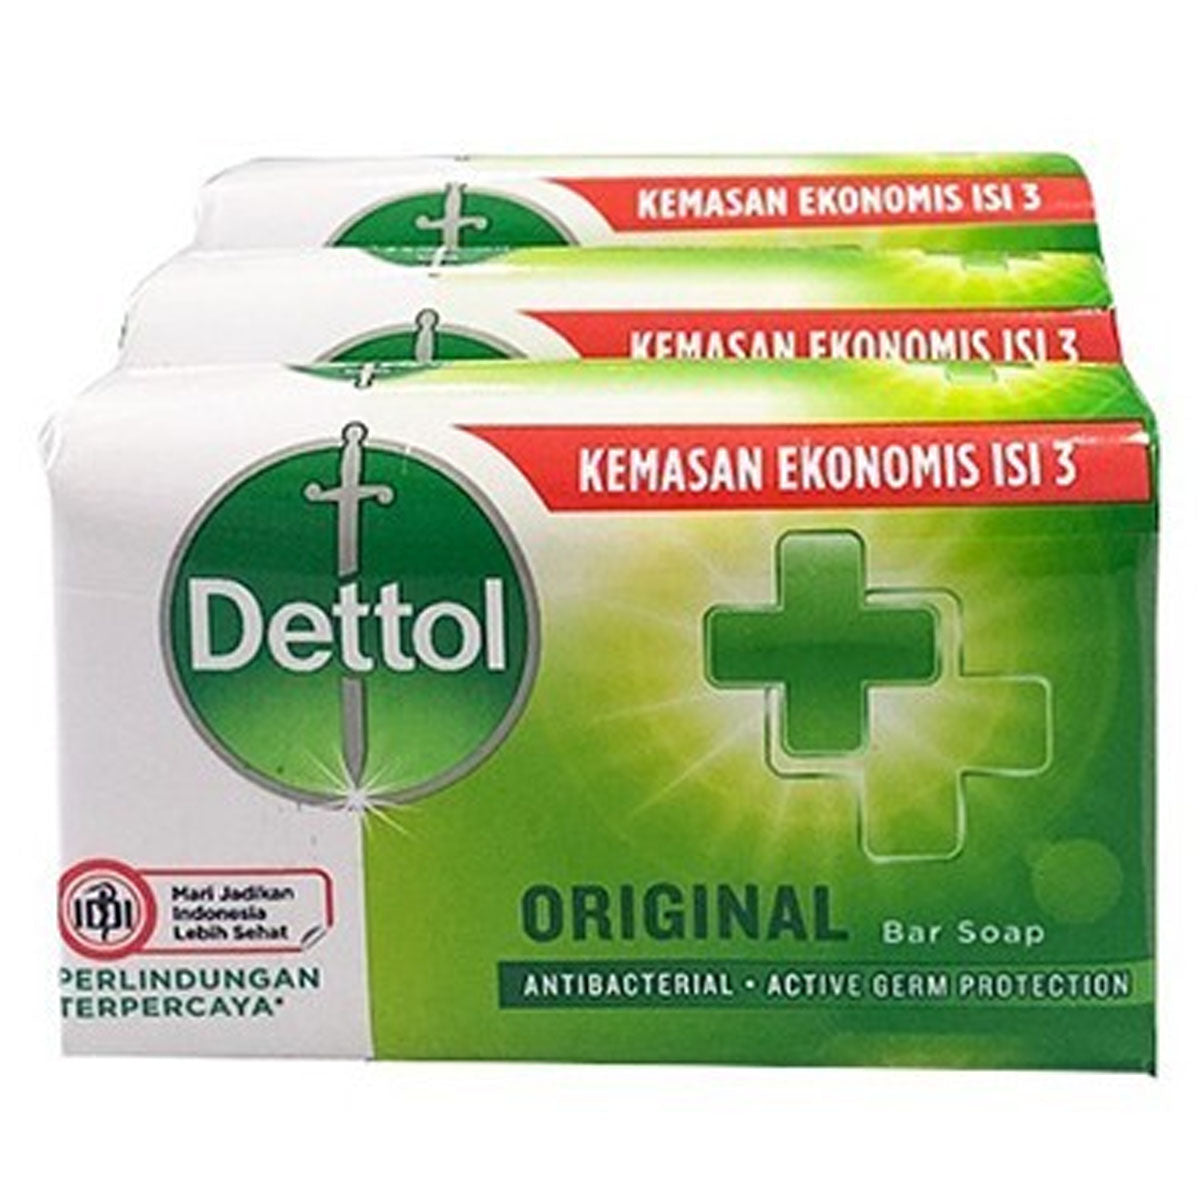 Dettol - Original Bar Soap - 3pcs - Continental Food Store